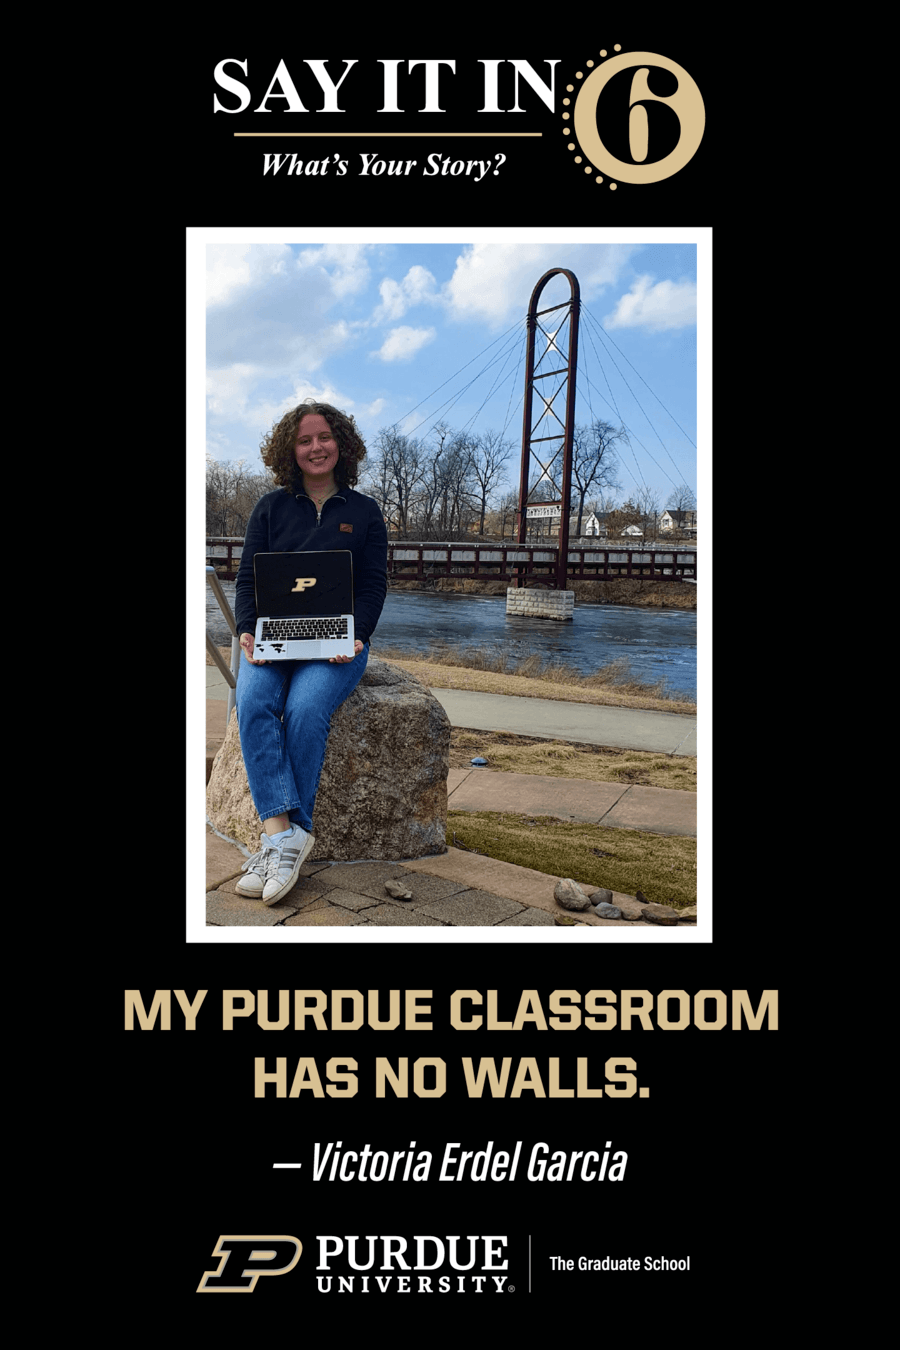 "My Purdue classroom has no walls." - Victoria Erdel Garcia